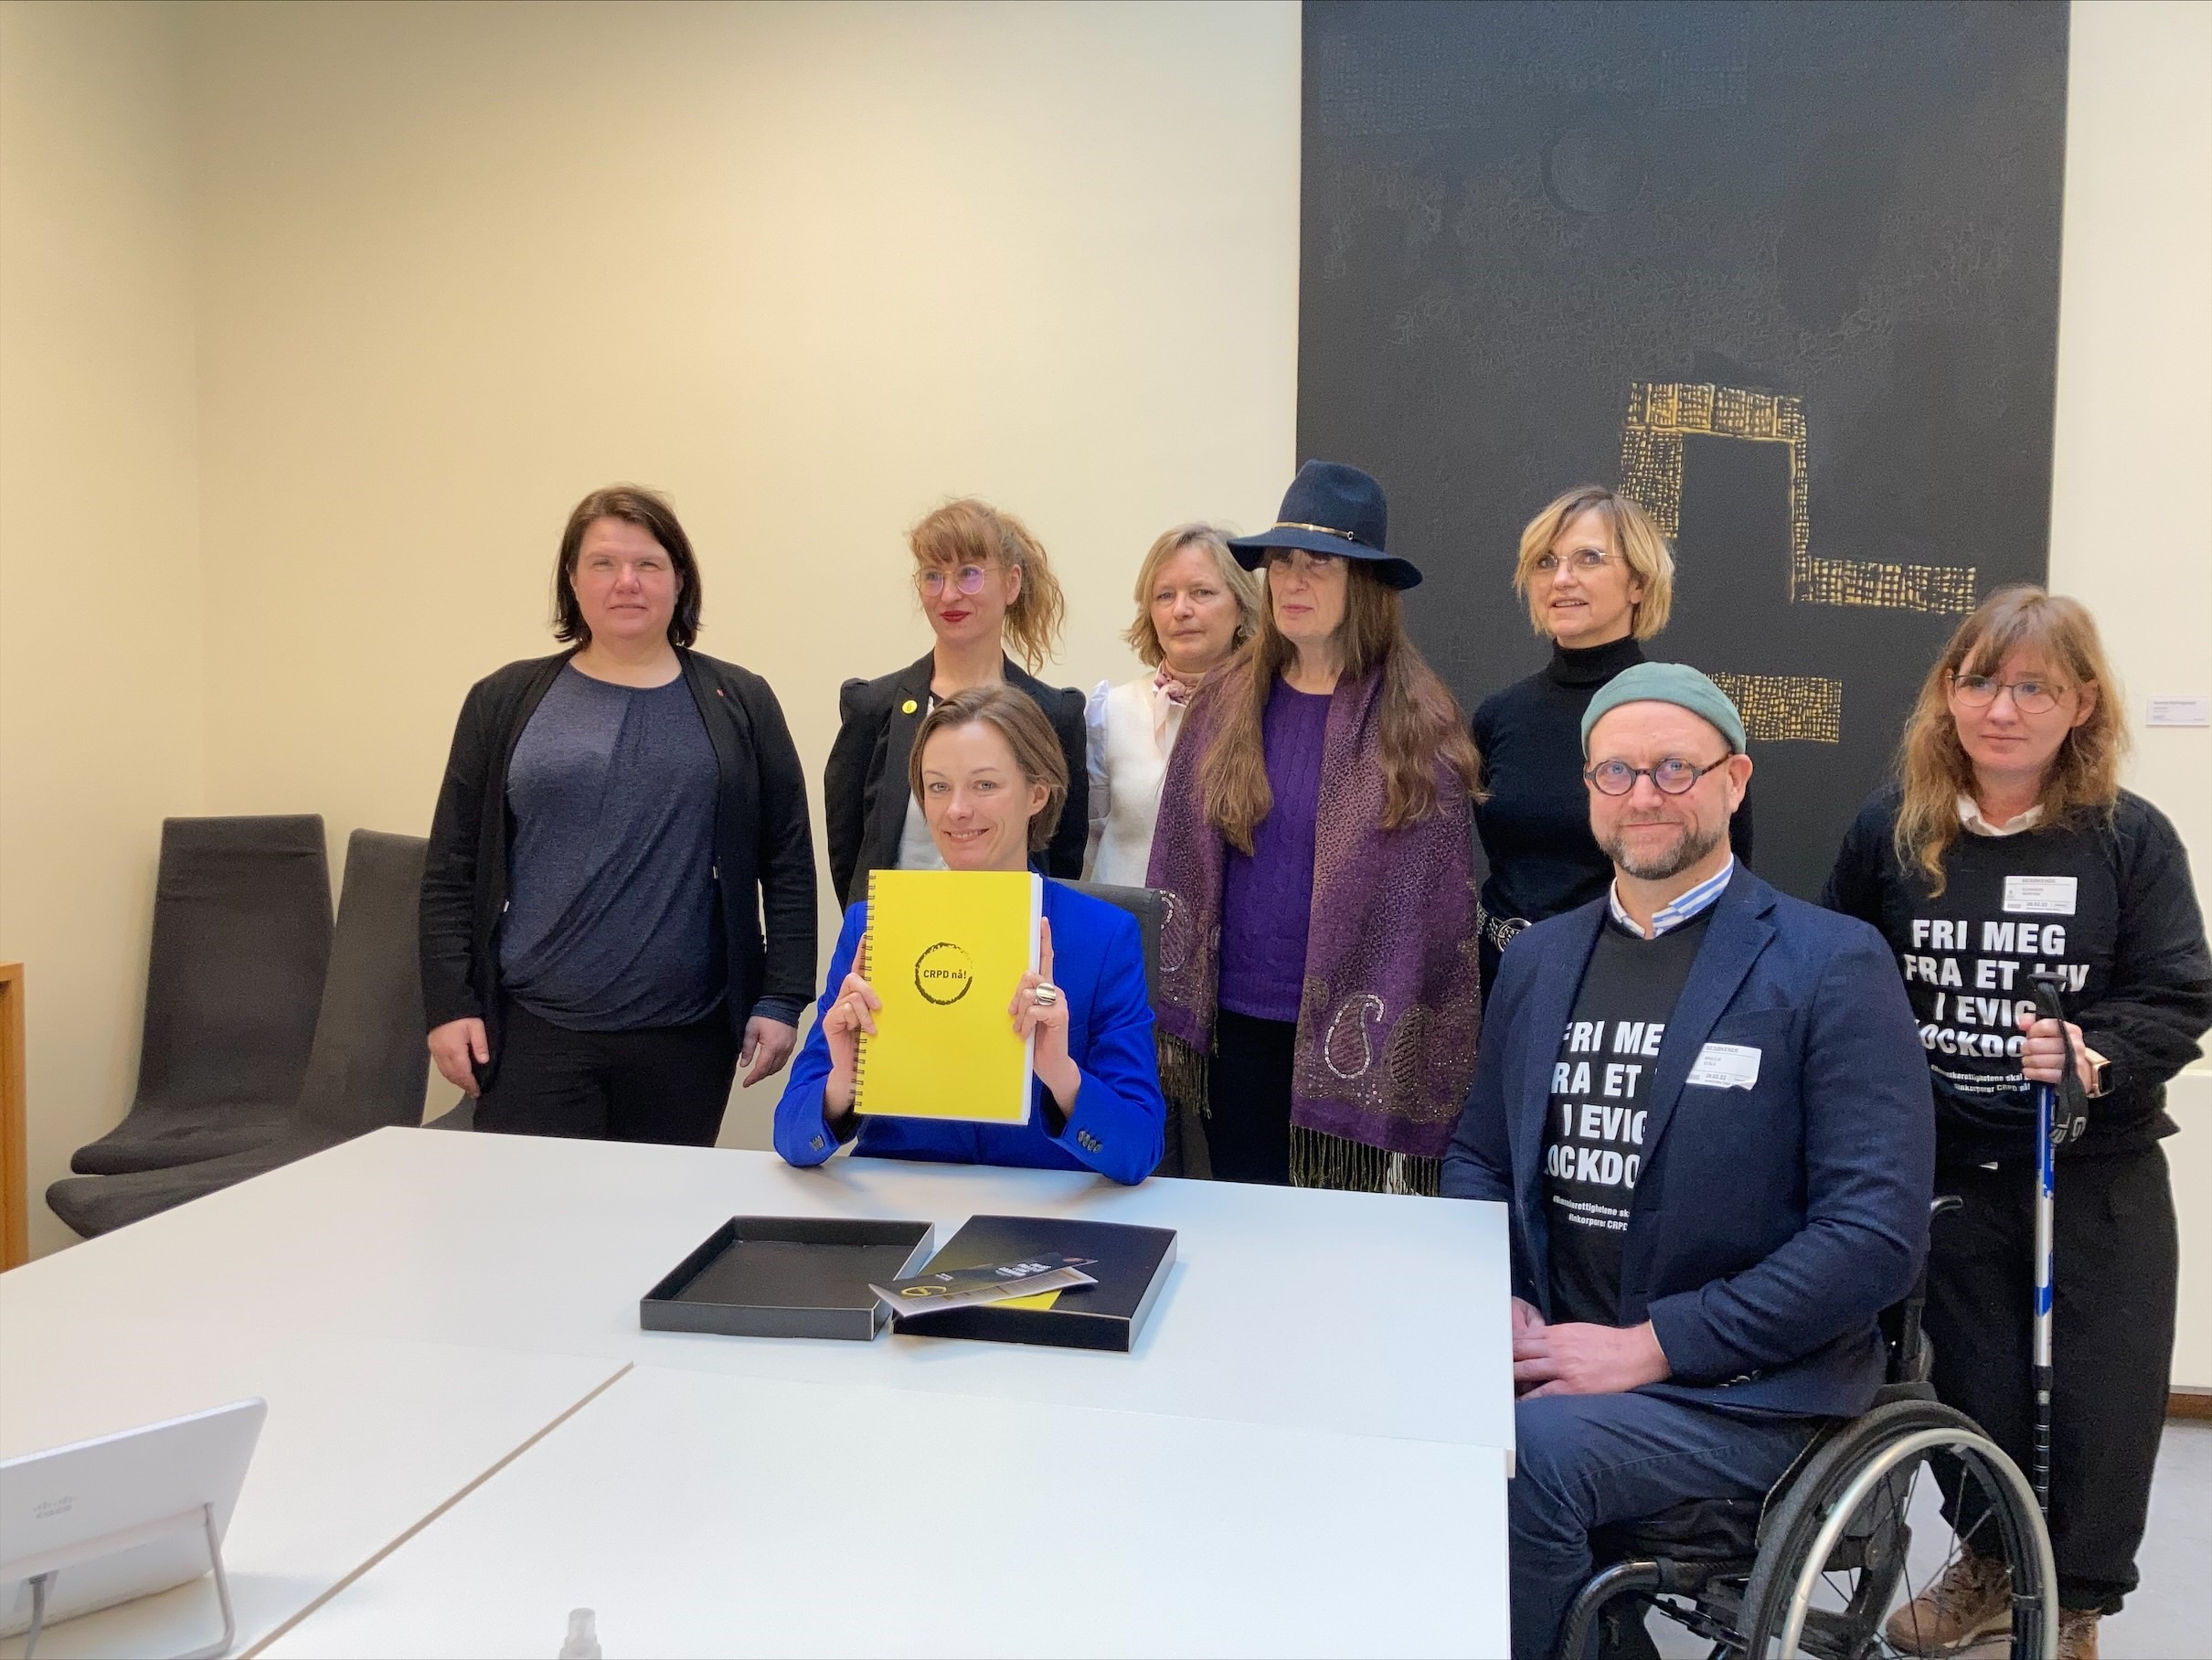 Anette Trettebergstuen med signaturlisten "CRPD nå!", blant representanter for funksjonshemmedes organisasjoner